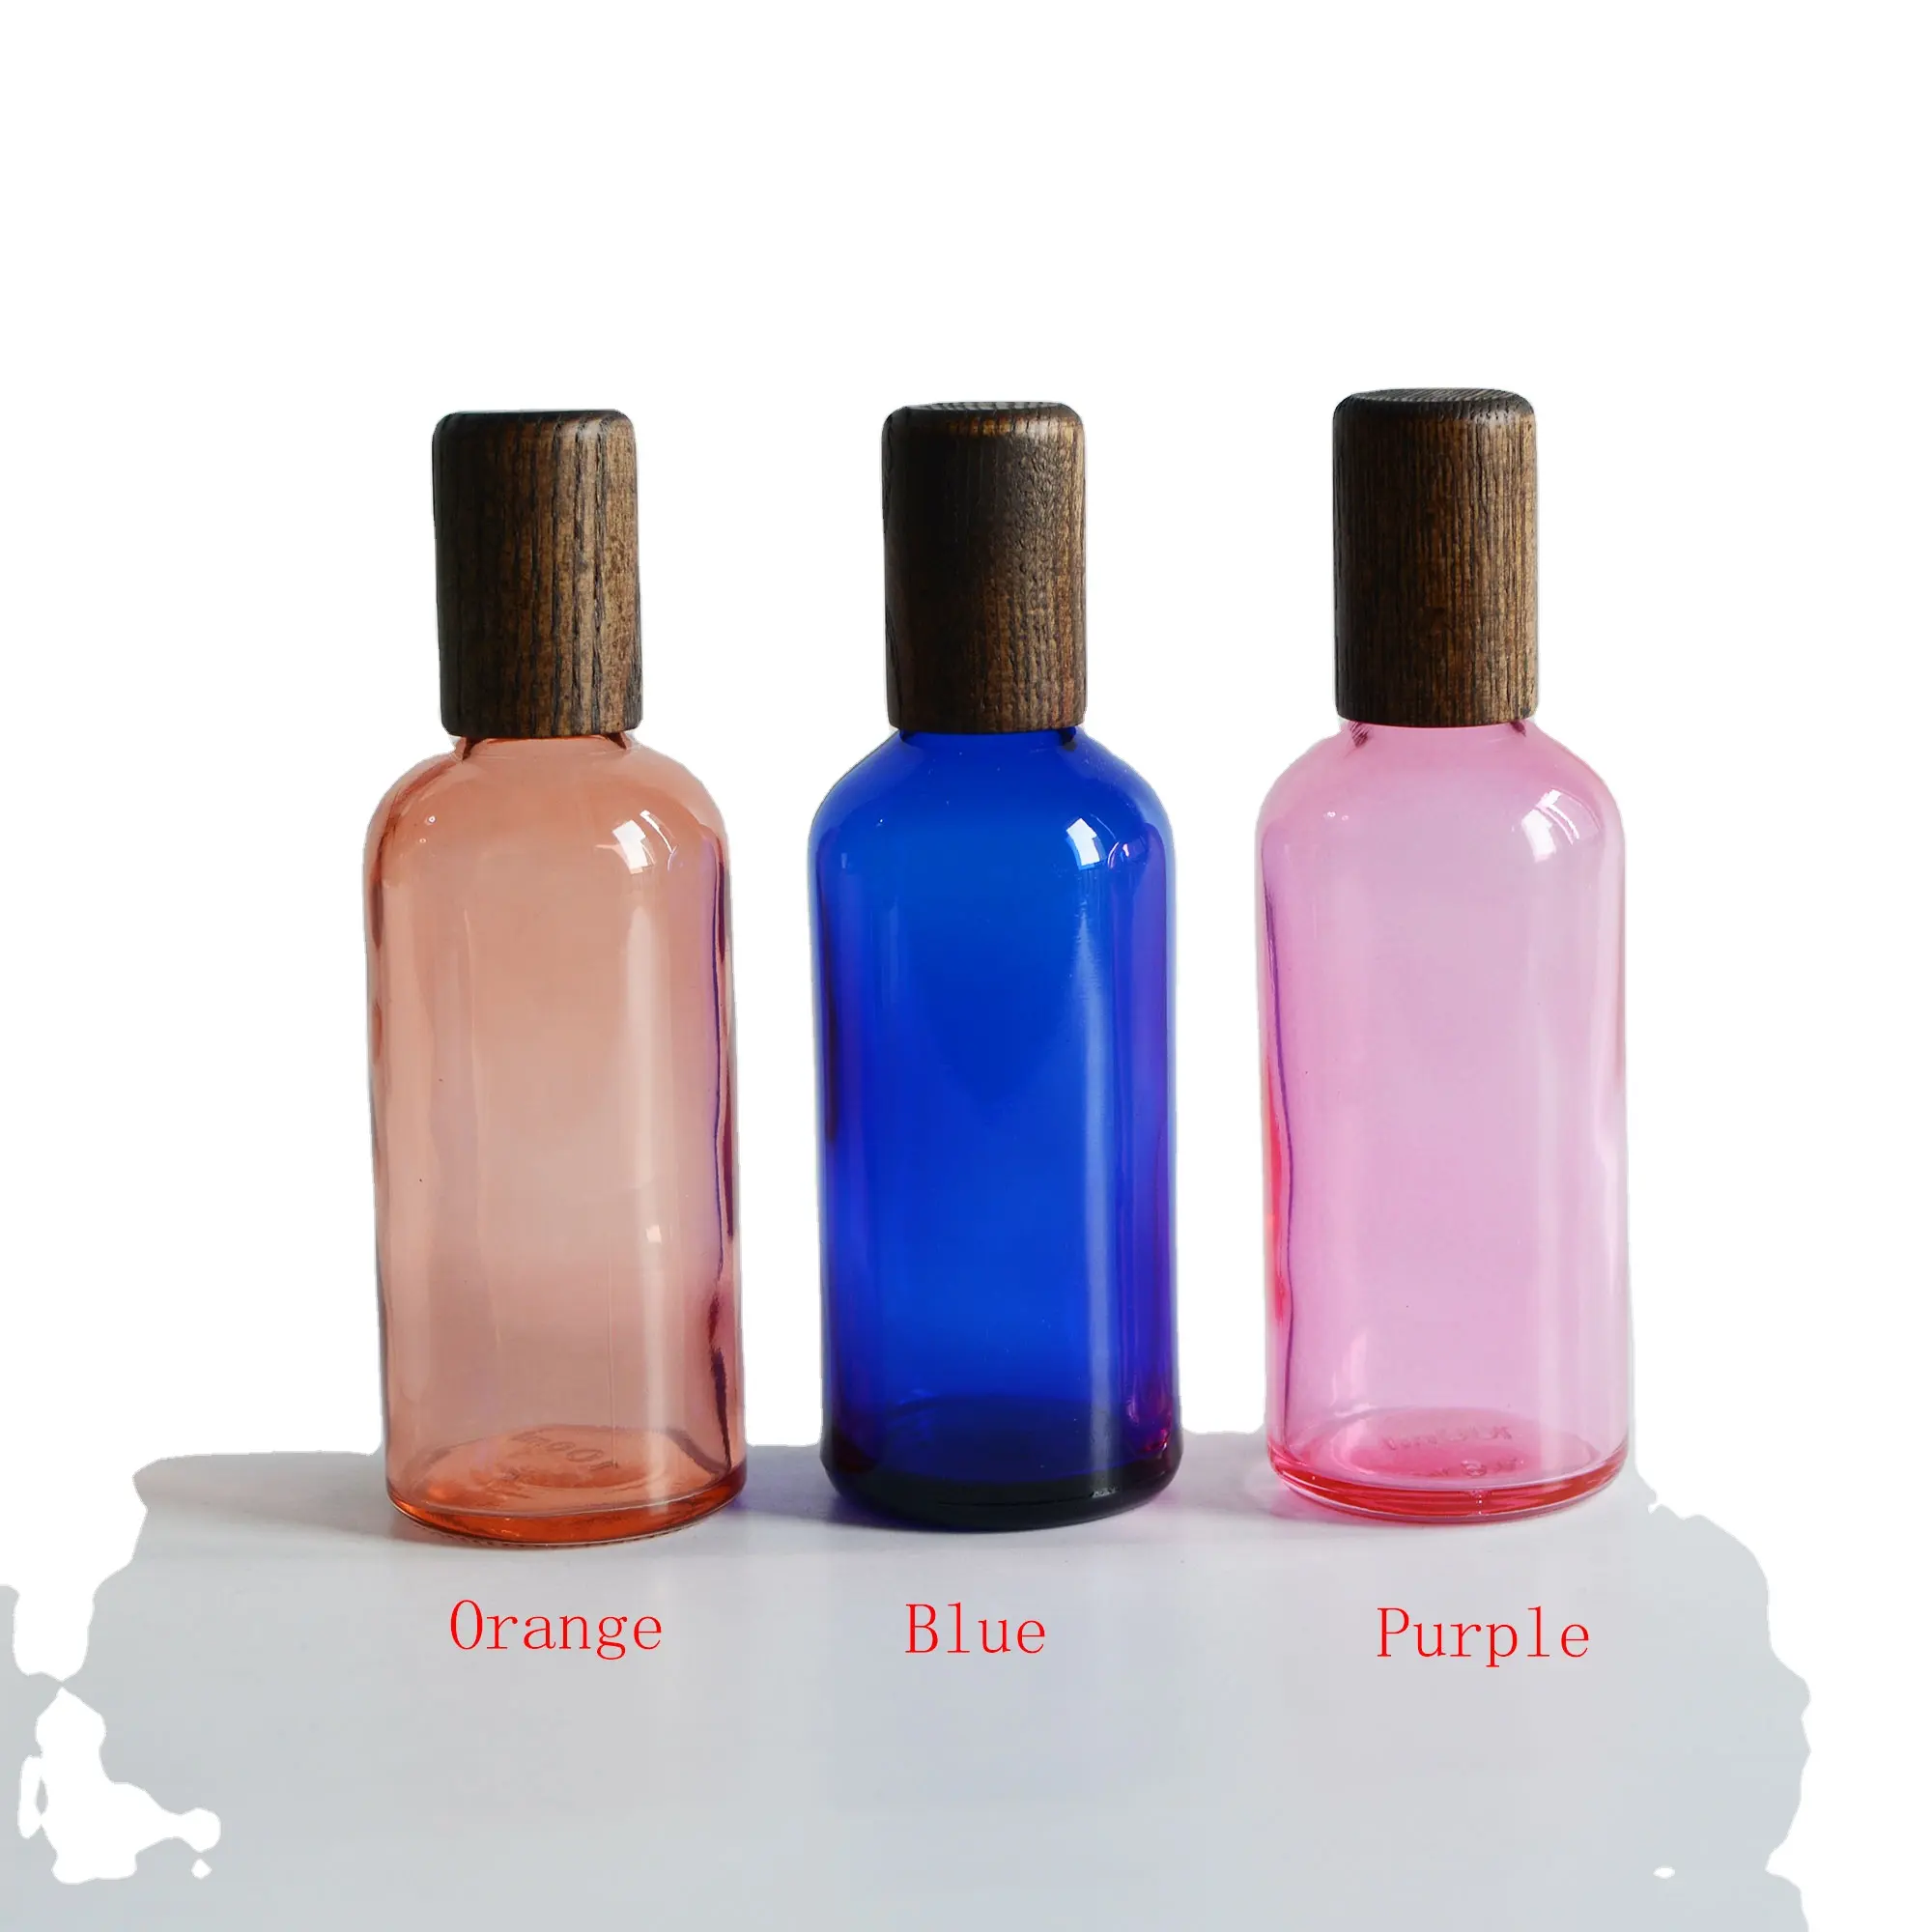 100ml Orange/Blau/Lila ätherische Öl-Roller flaschen, rostfreie Roll-on-Flaschen, Edelstahl-Roller Ball, Großhandel